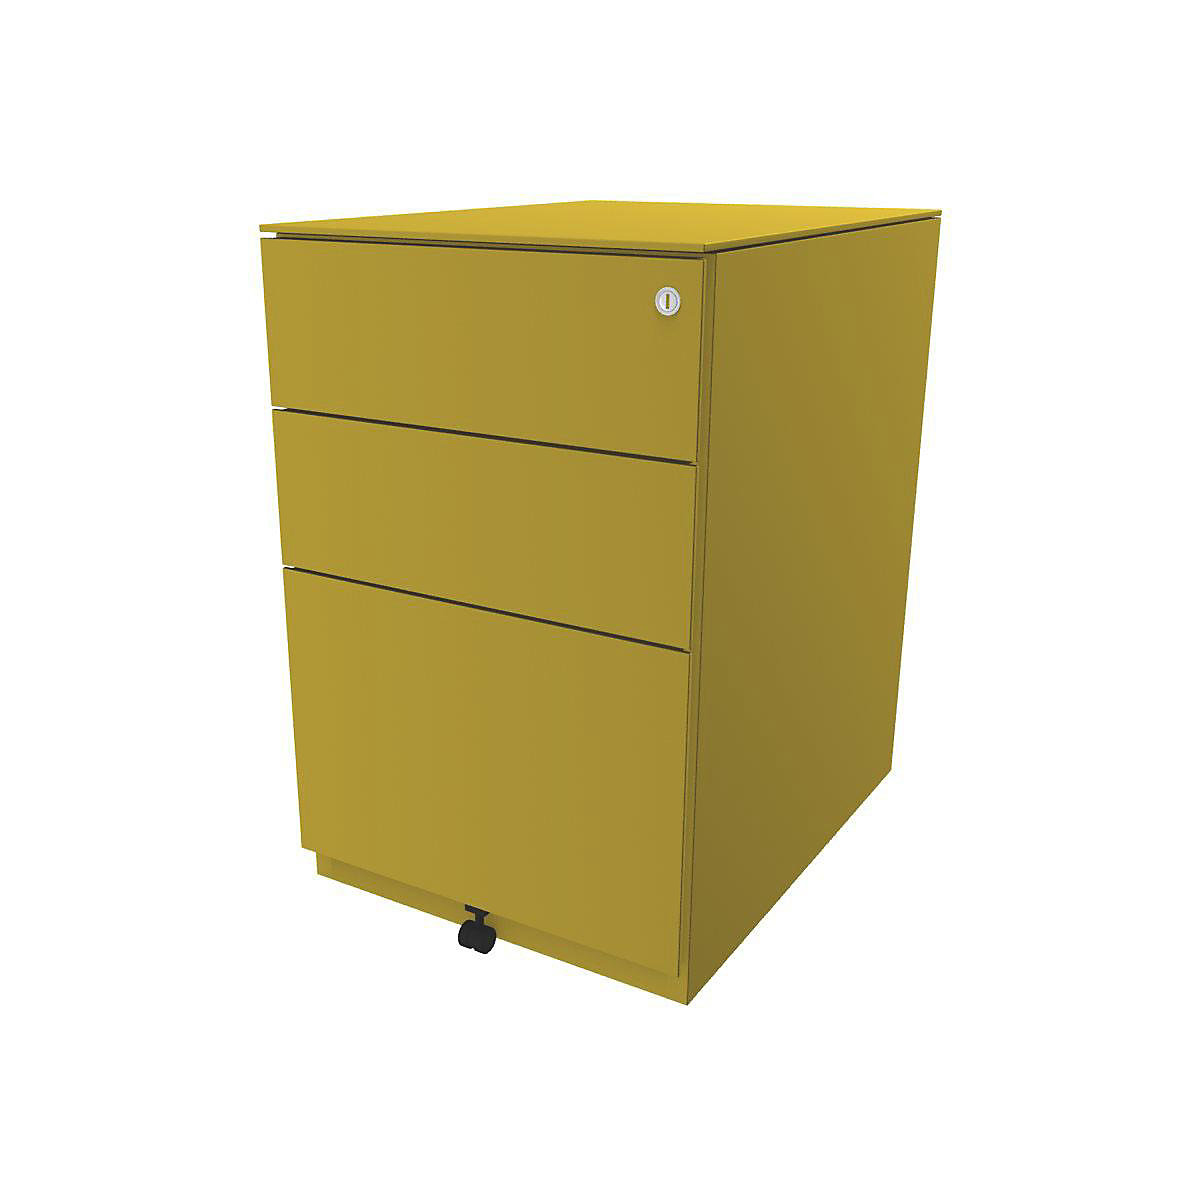 Pojazdný kontajner Note™, s 2 univerzálnymi zásuvkami, 1 závesná registratúra – BISLEY, v x š x h 652 x 420 x 565 mm, s hornou doskou, žltá-14